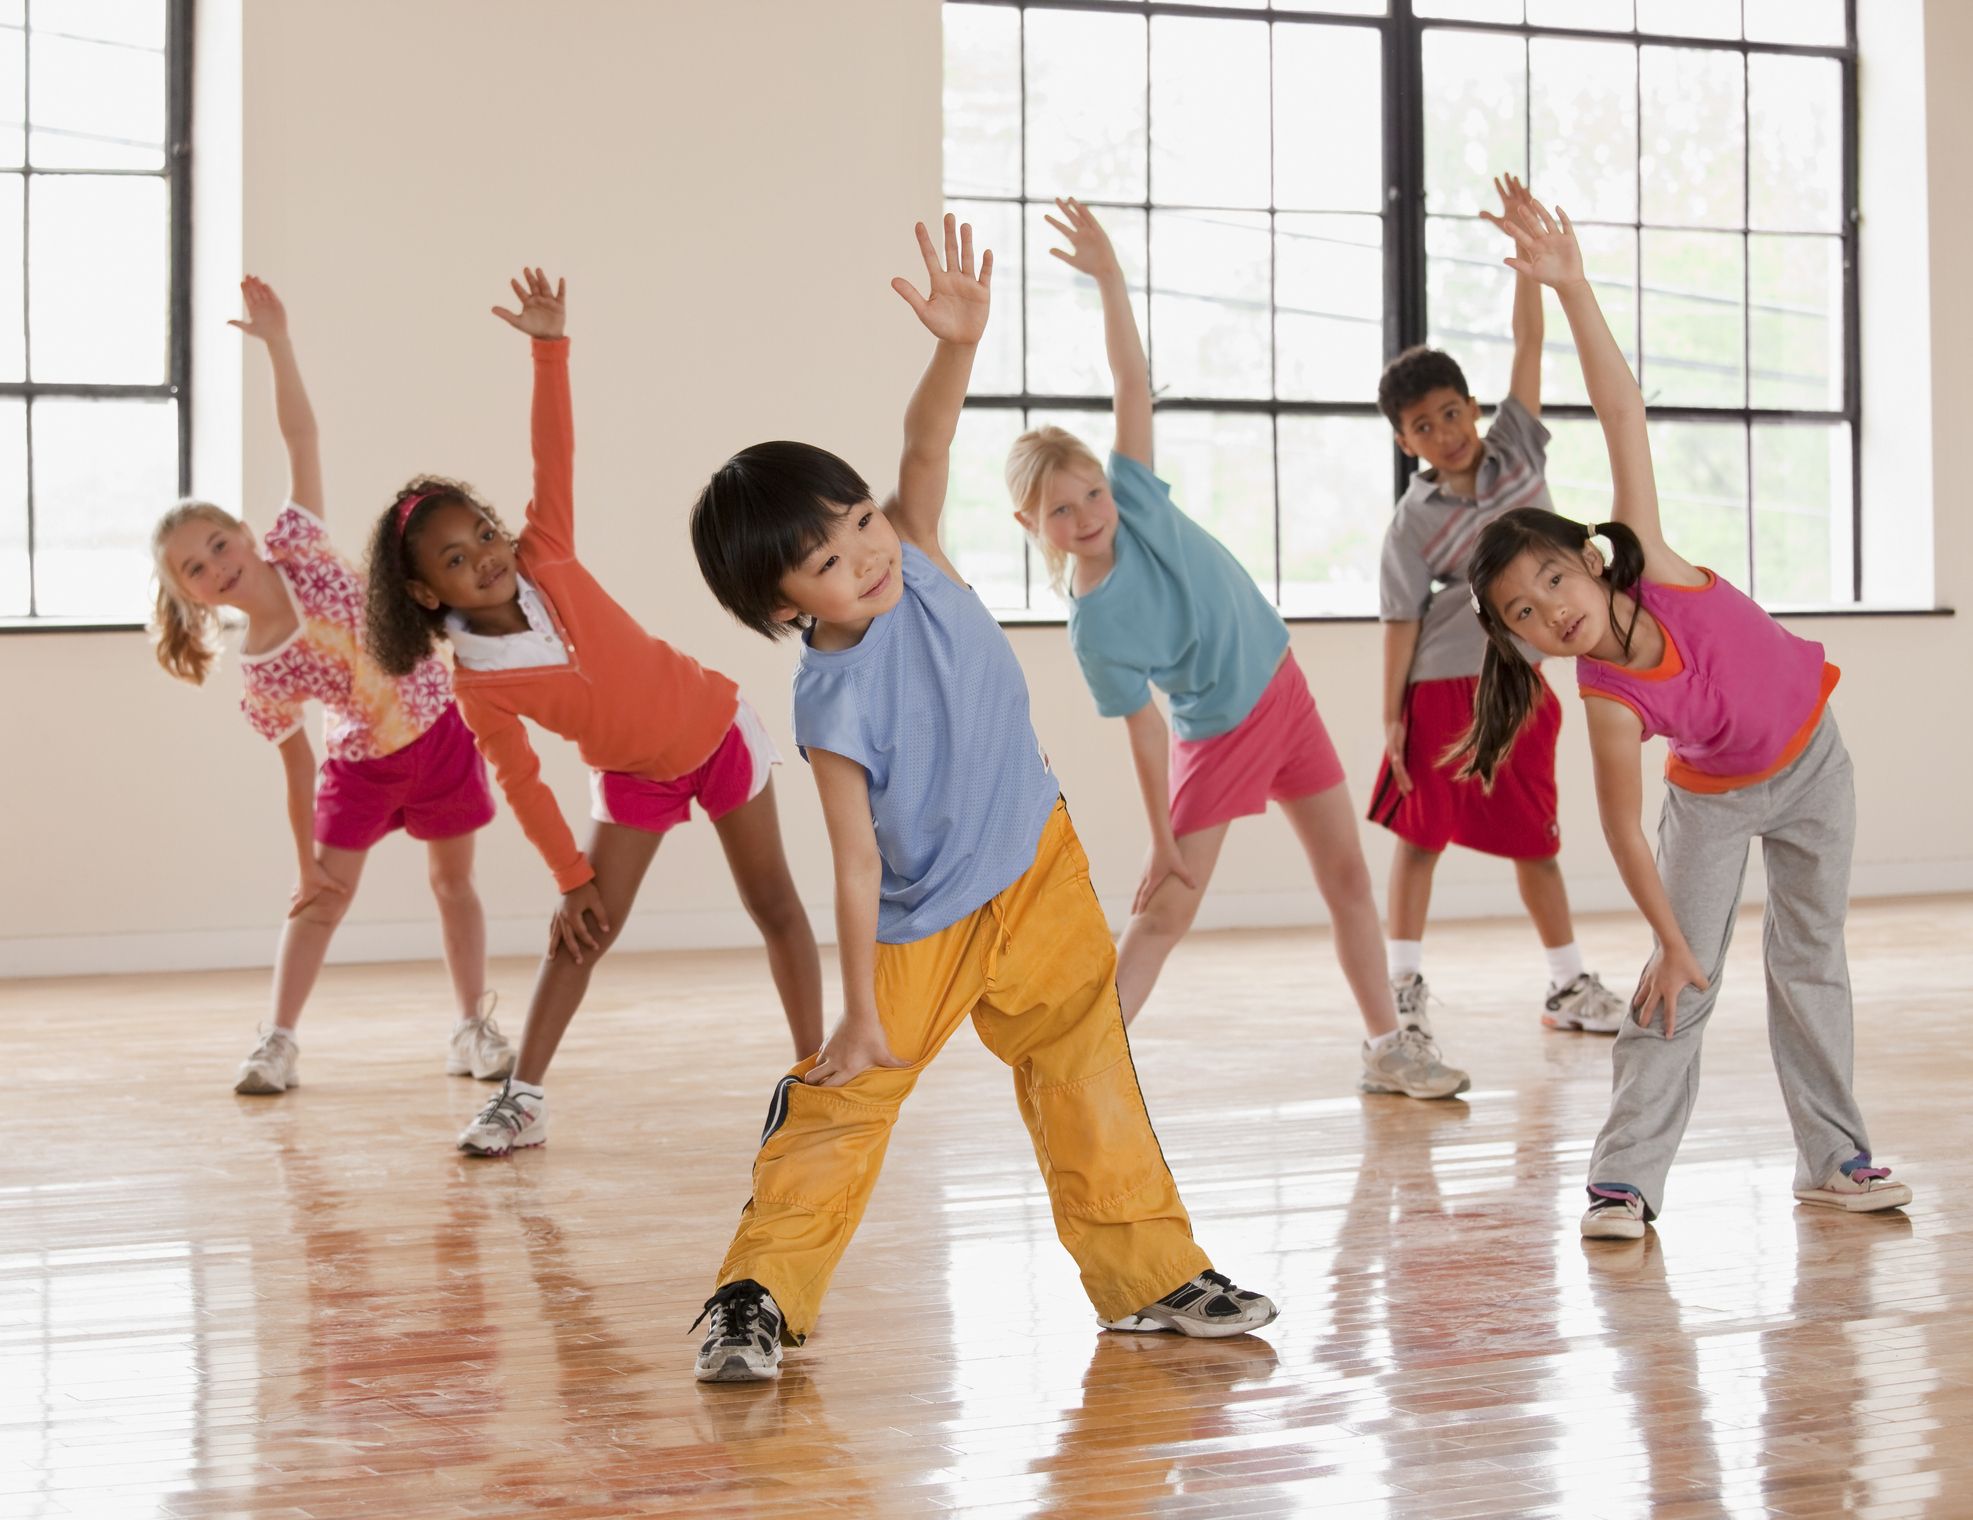 Children do sports. Занятие спортом дети. Физическая культура. Занятие физкультурой и спортом. Дети на физкультуре.